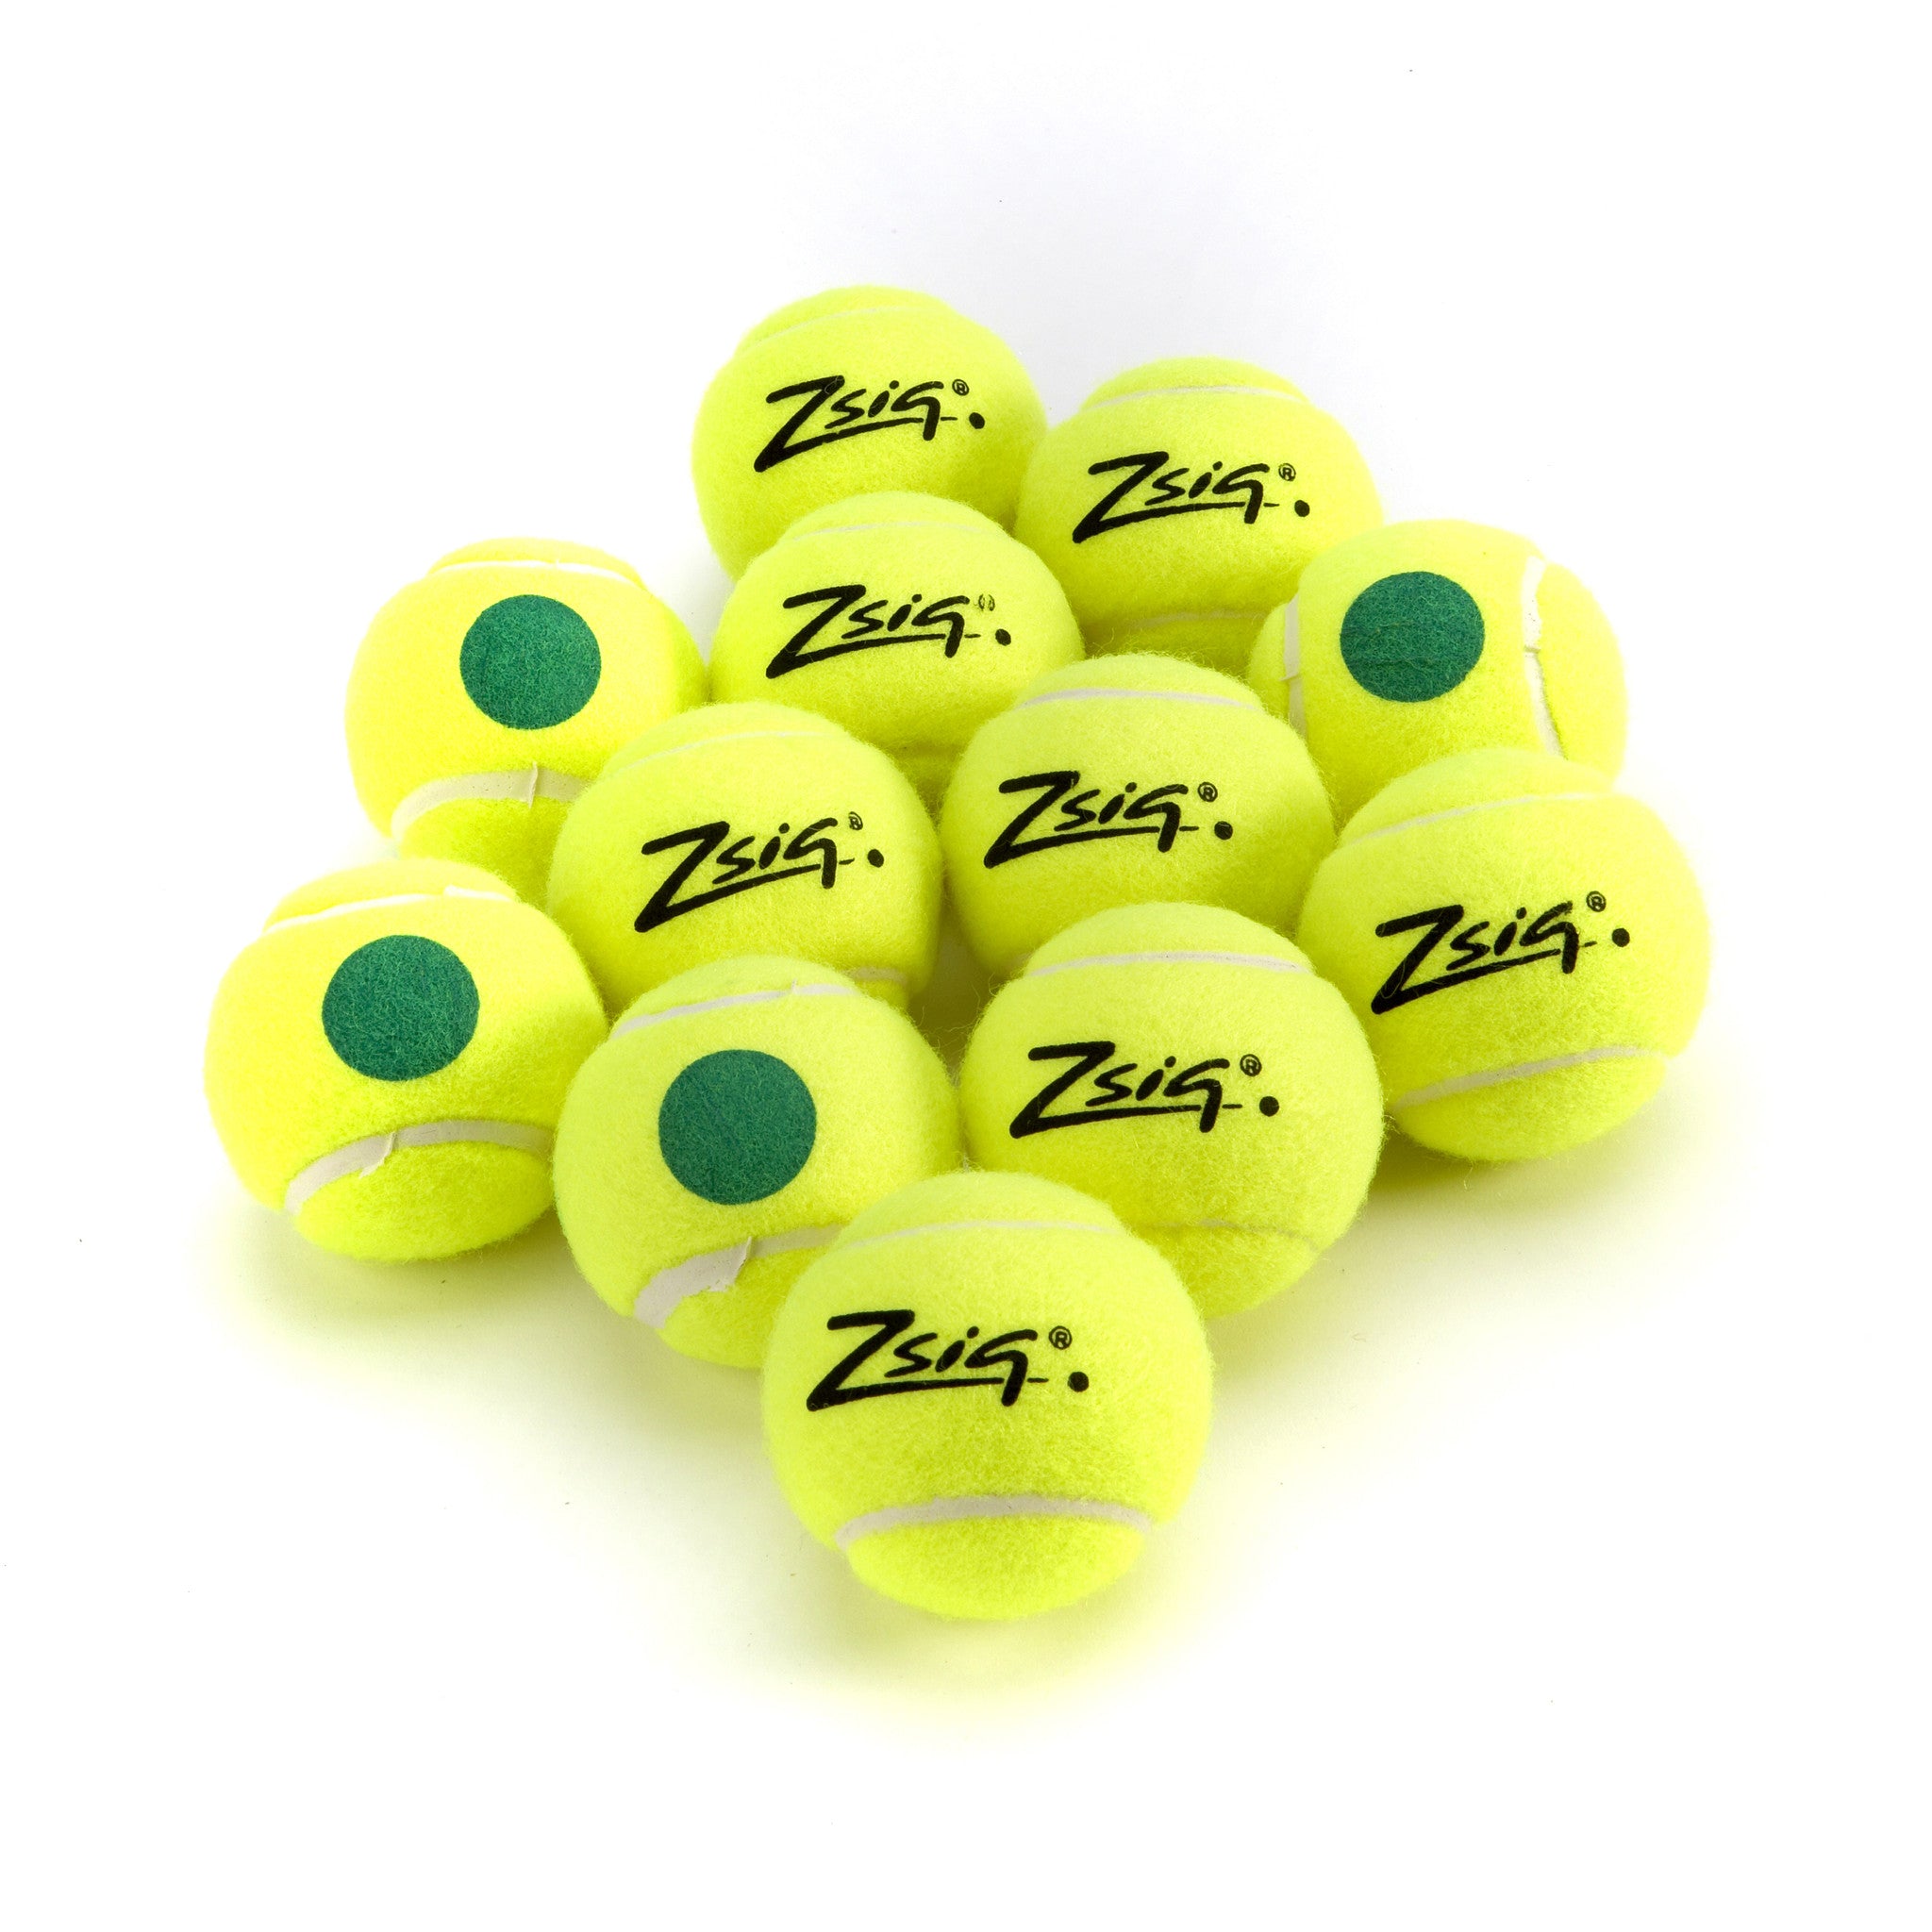 Zsig Green Dot Mini Tennis Balls. 1 Dozen balls.